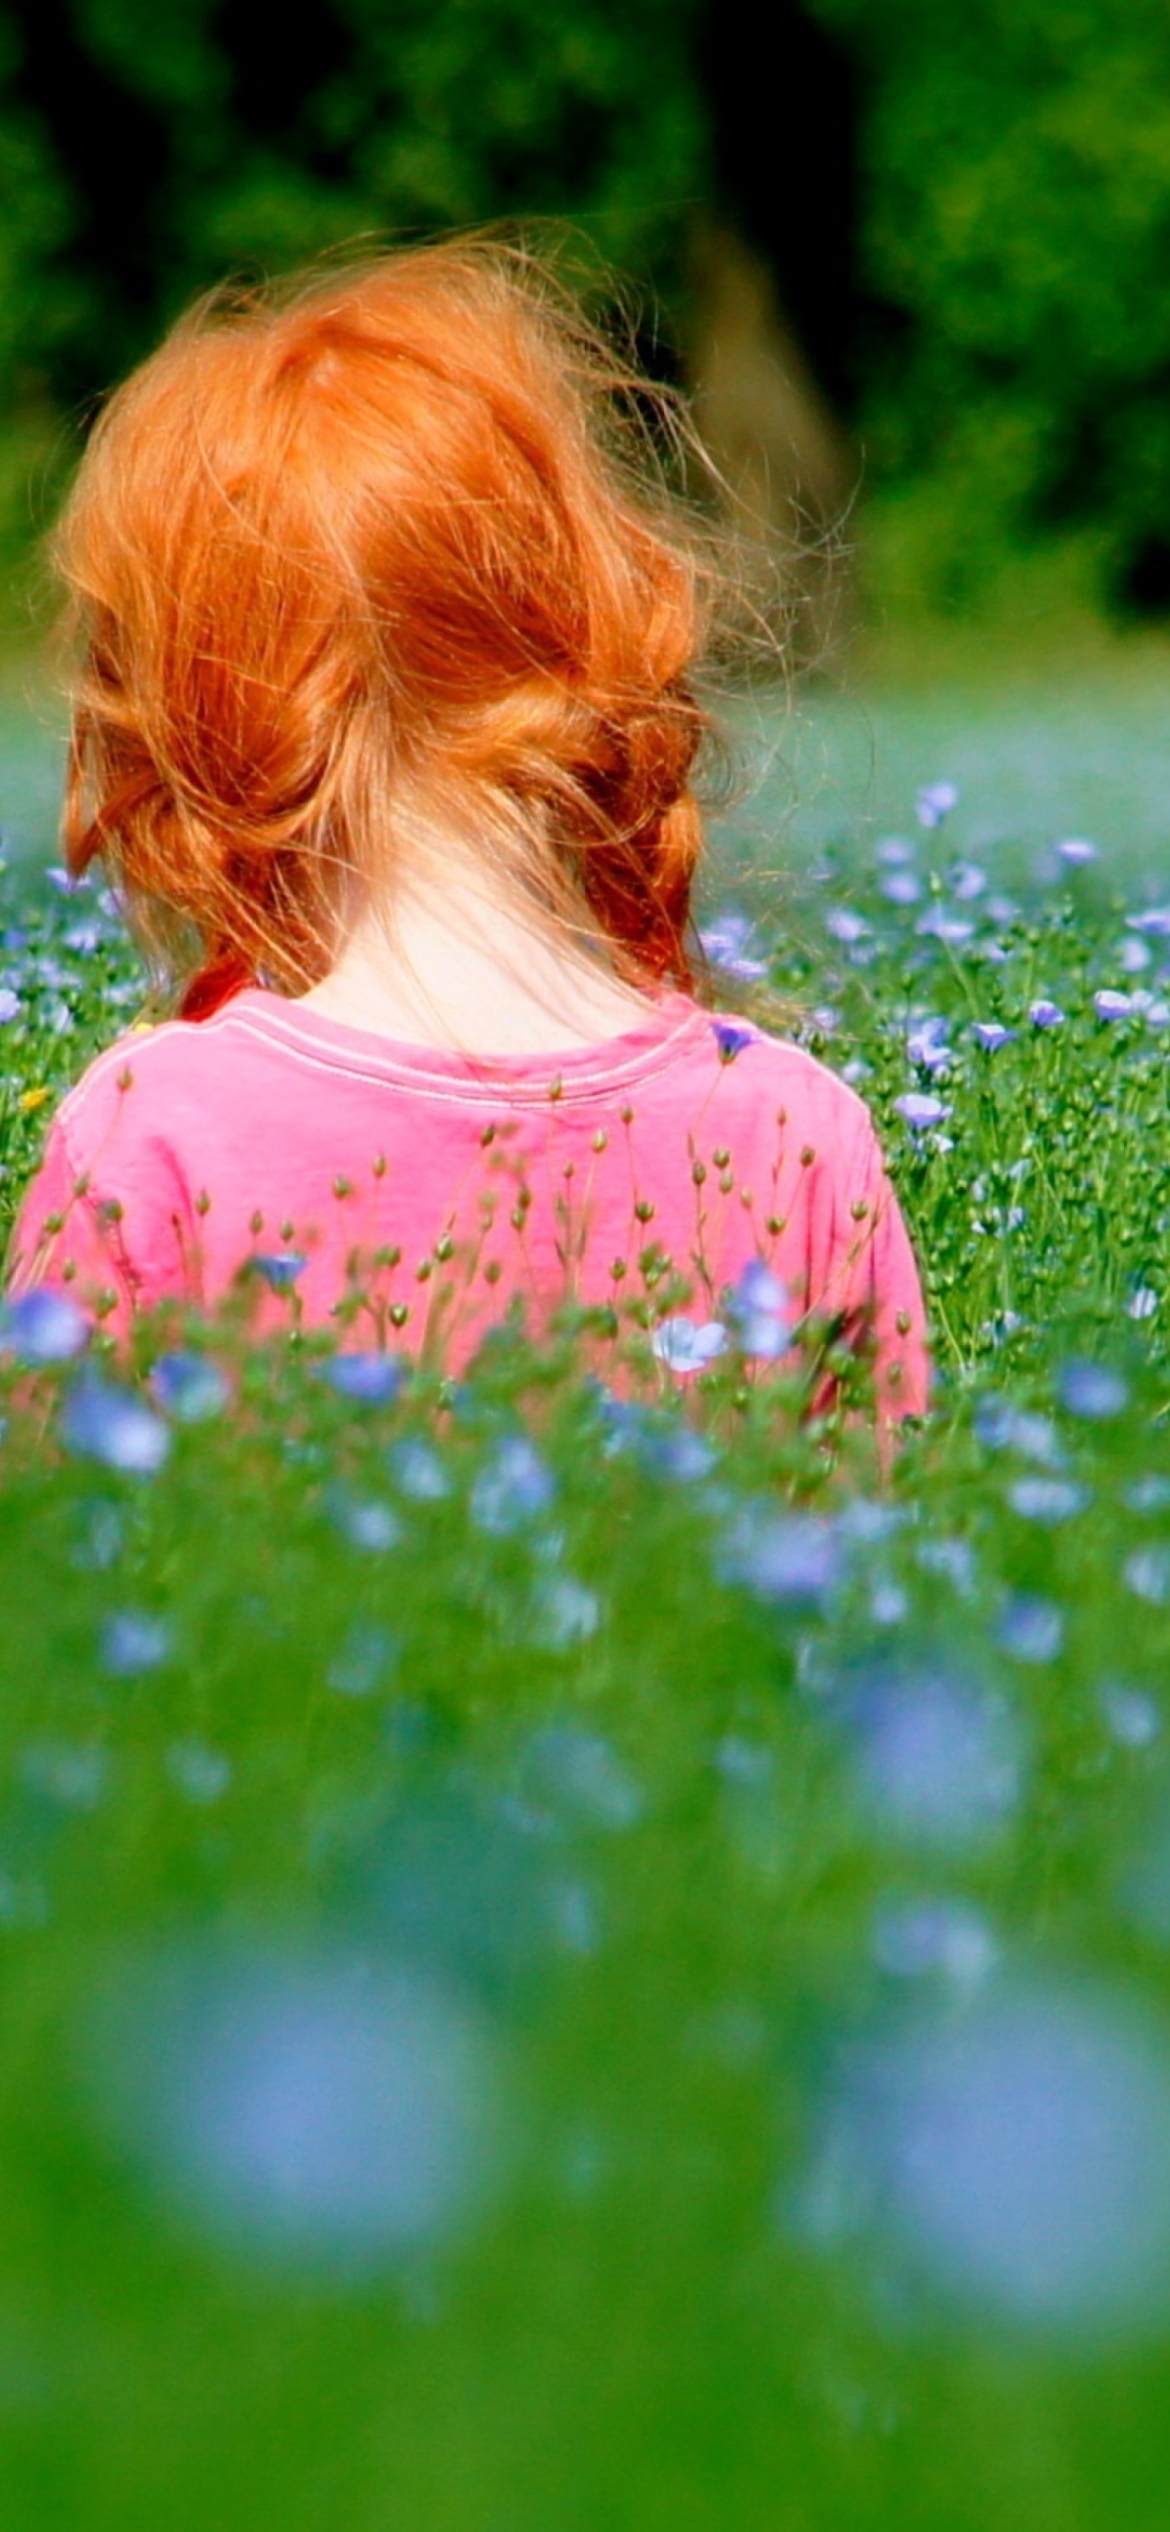 Redhead Child Girl Behind Green Grass wallpaper 1170x2532